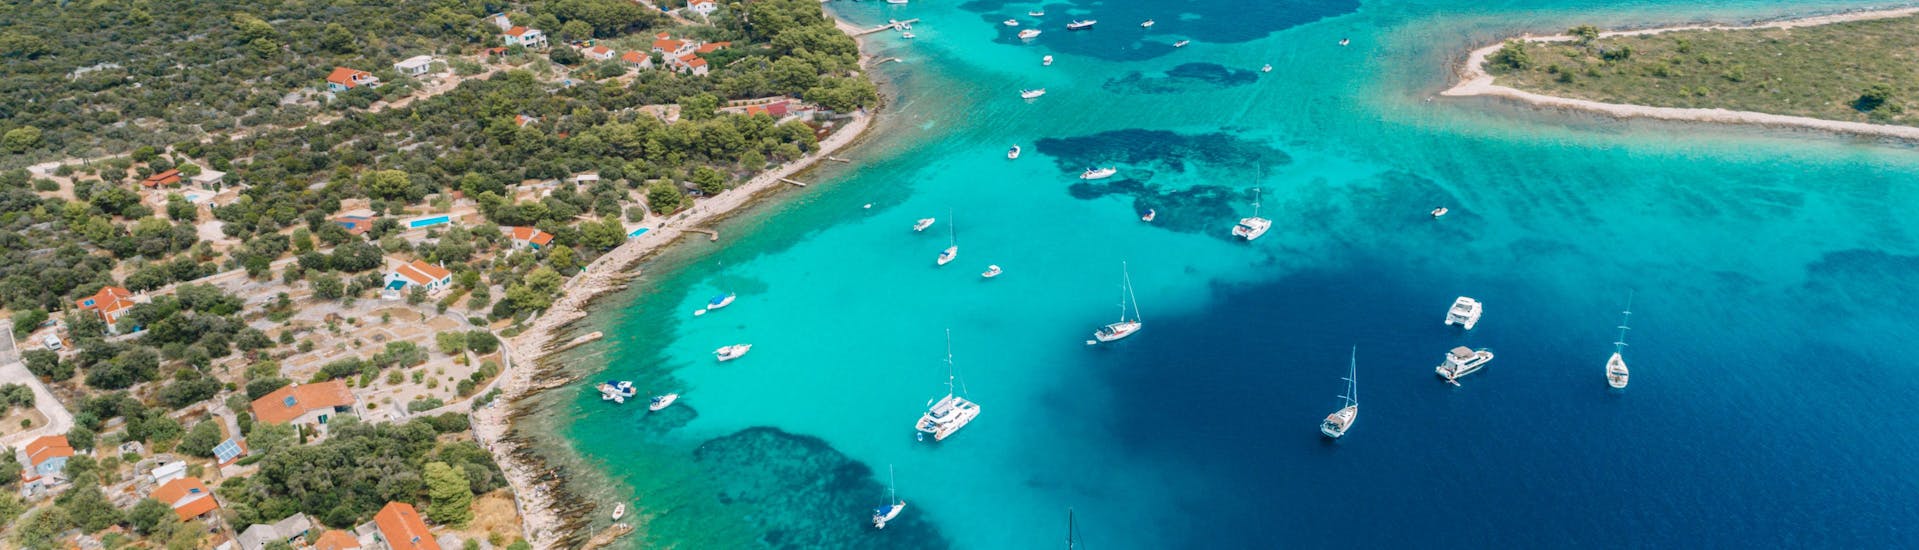 Landschap van Split met boten en kristalblauw water.